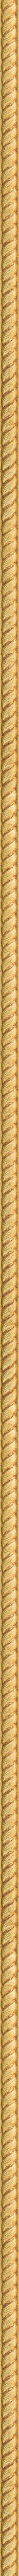 Σκαλιστή λεπτή κορνίζα με φύλλο χρυσού frame